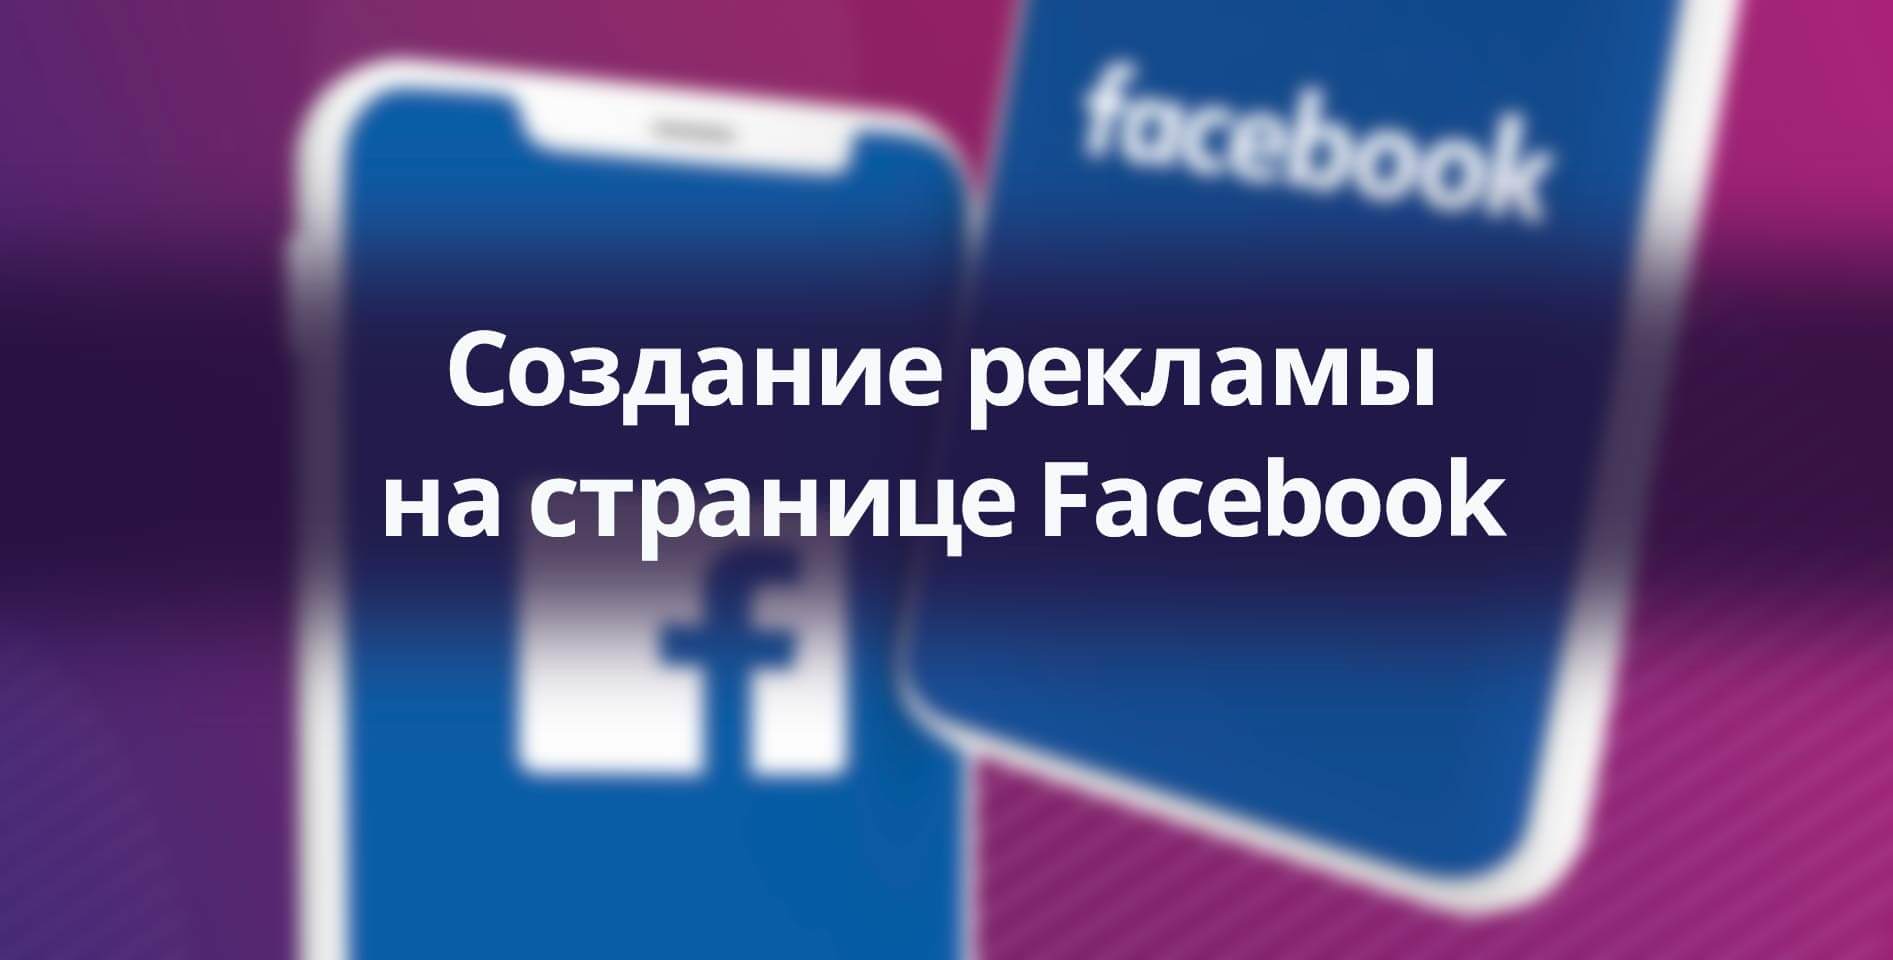 Facebook — Создание рекламы на странице Facebook